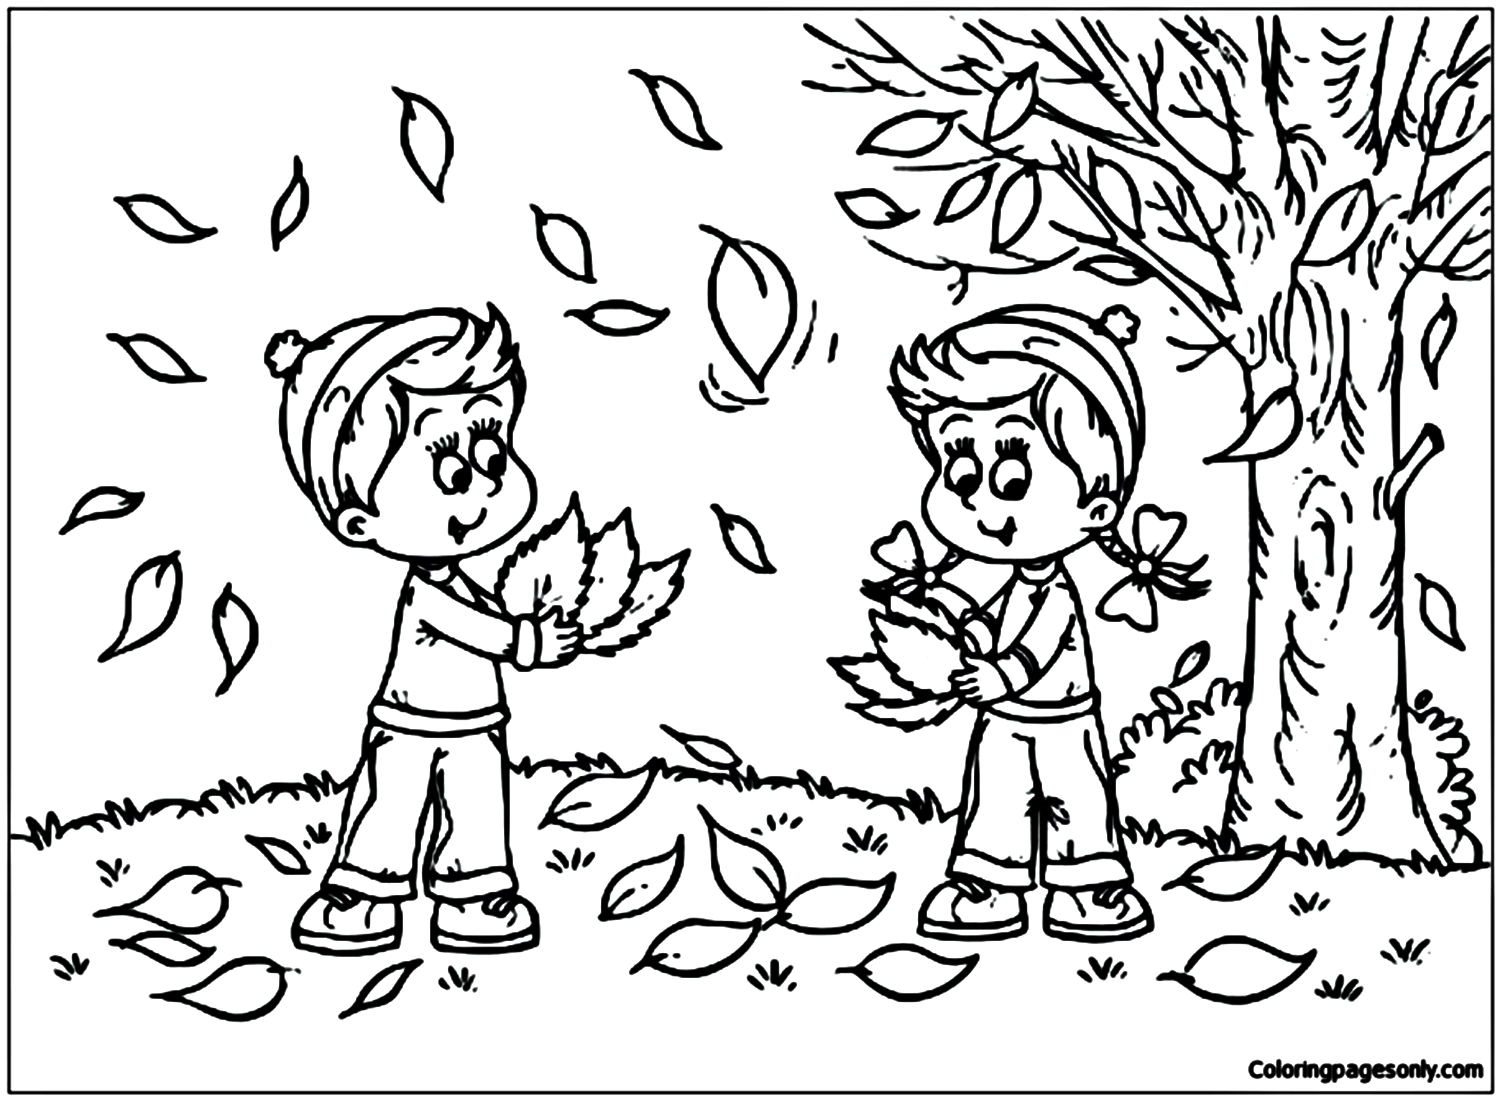 Enfants jouant avec des feuilles d'automne